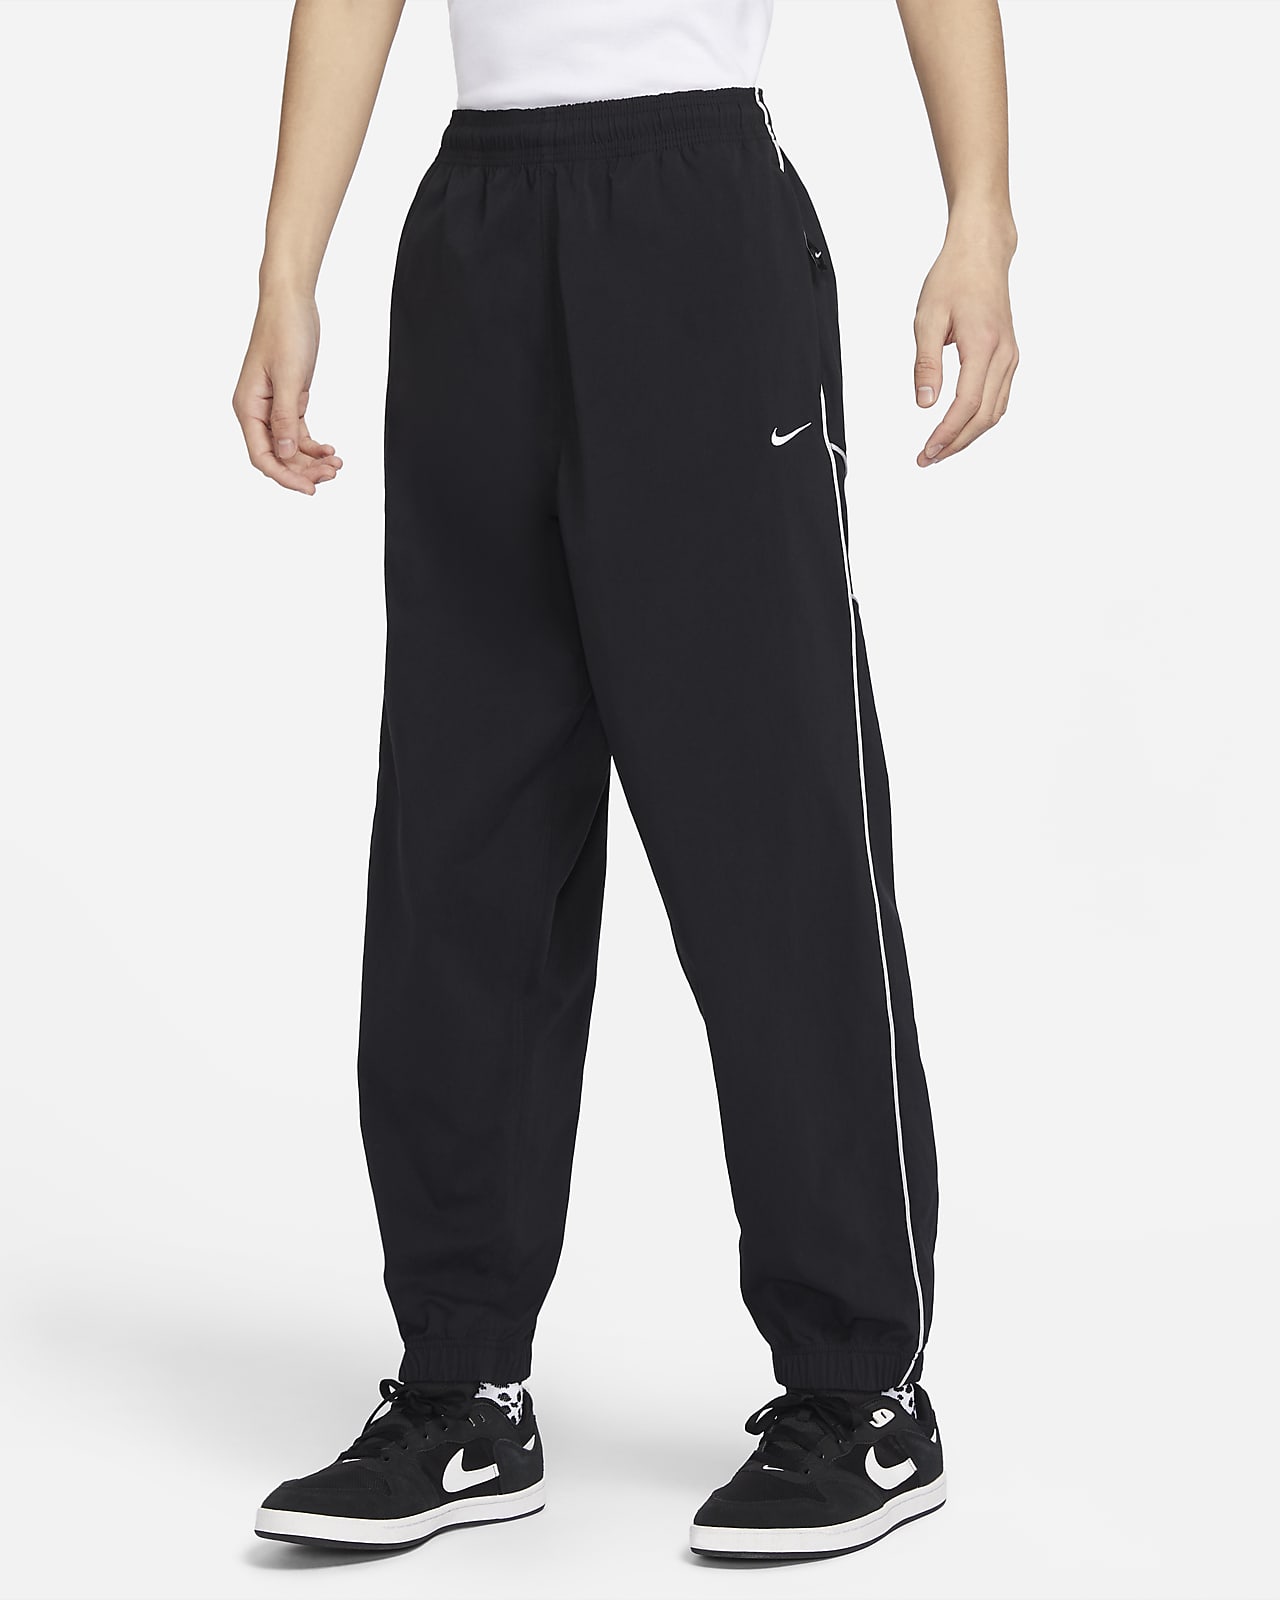 กางเกงวอร์มสเก็ตบอร์ดขายาวสมบุกสมบัน Nike SB